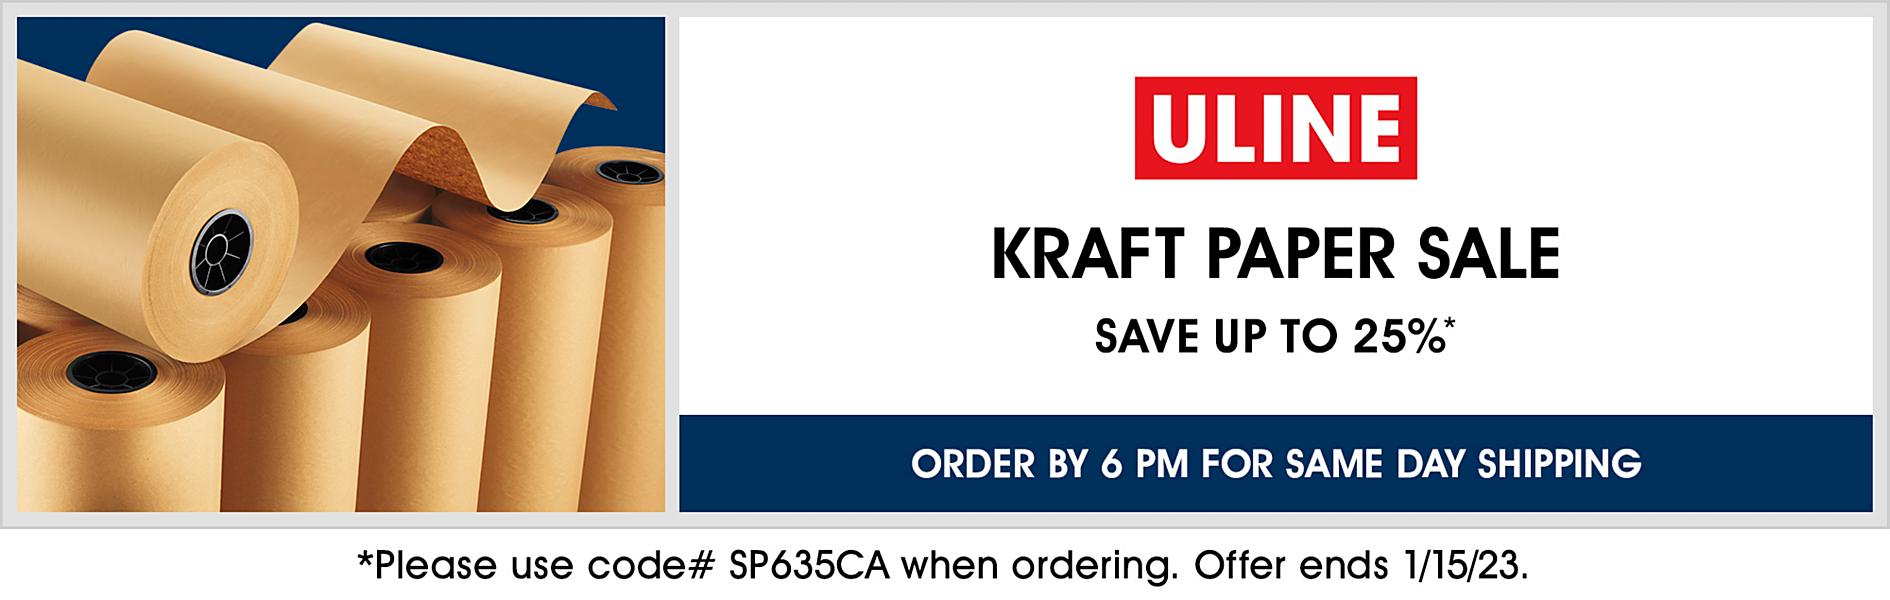 75 lb Kraft Paper Roll - 24 x 475' S-7051 - Uline